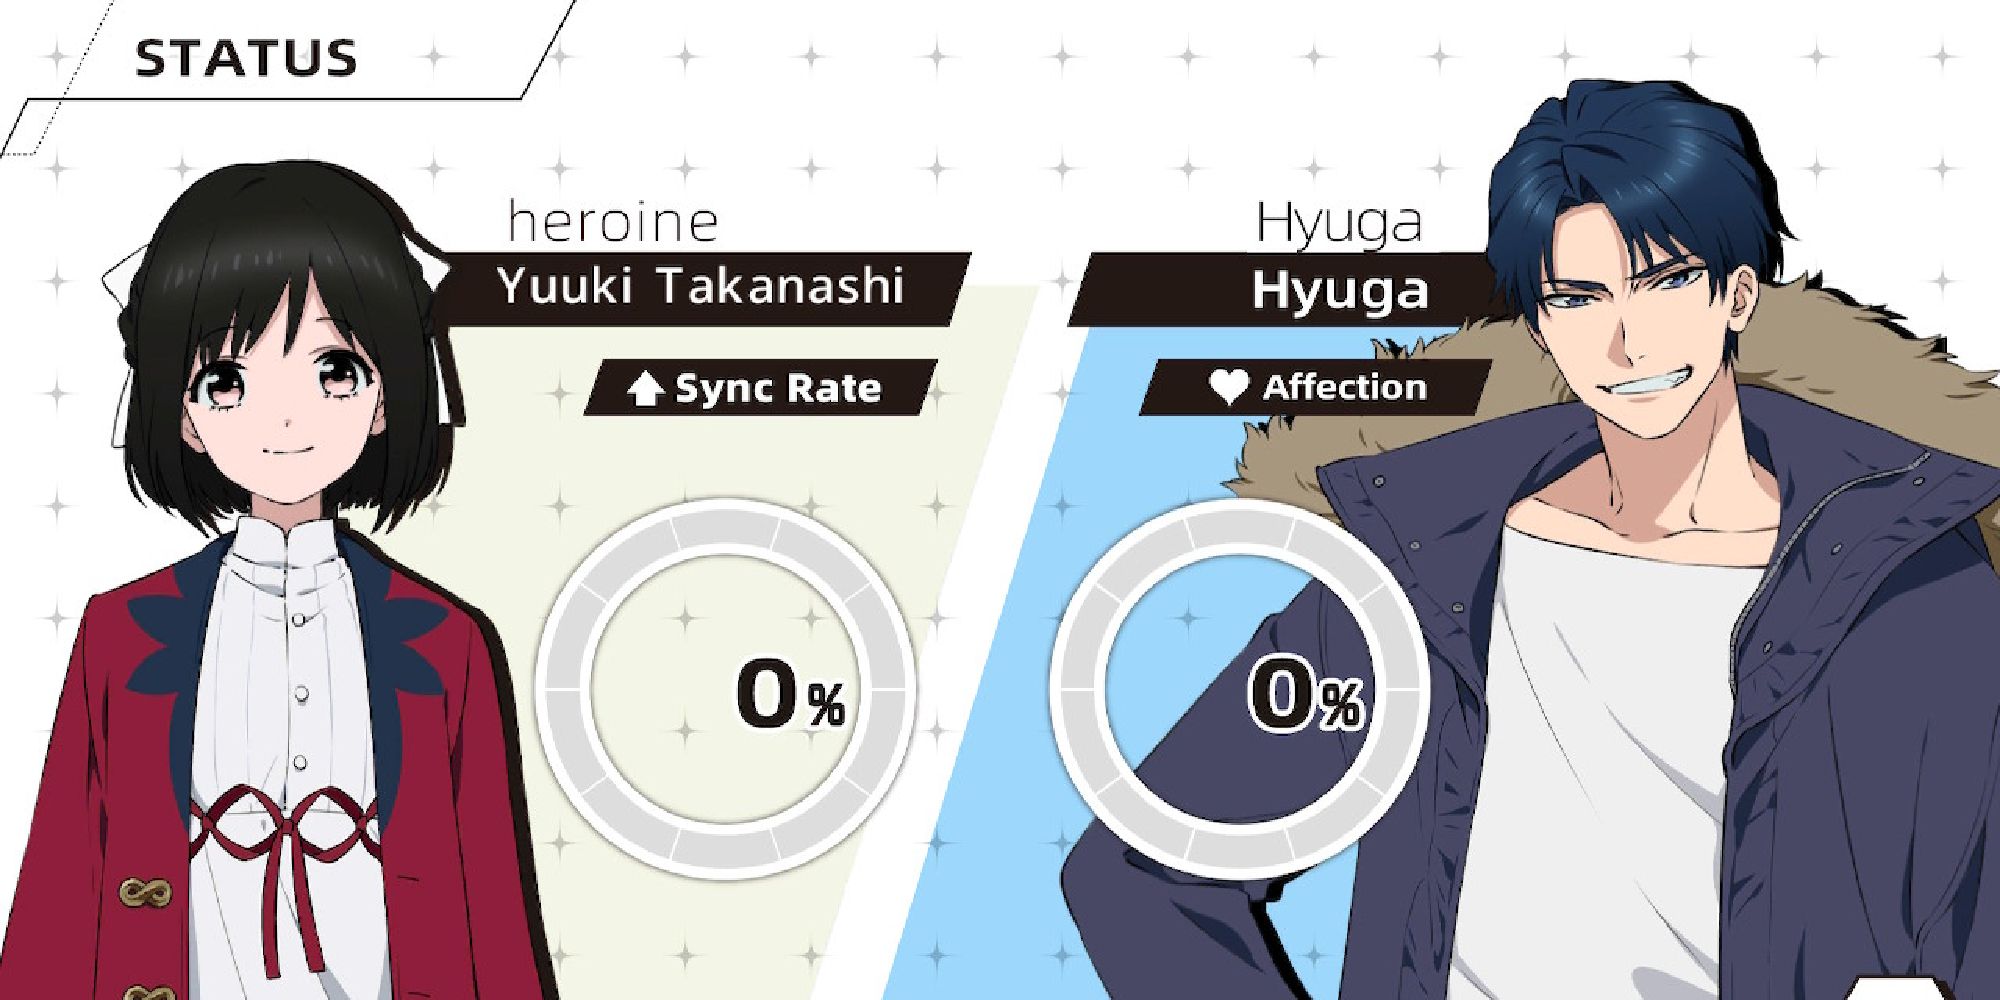 status with hyuga